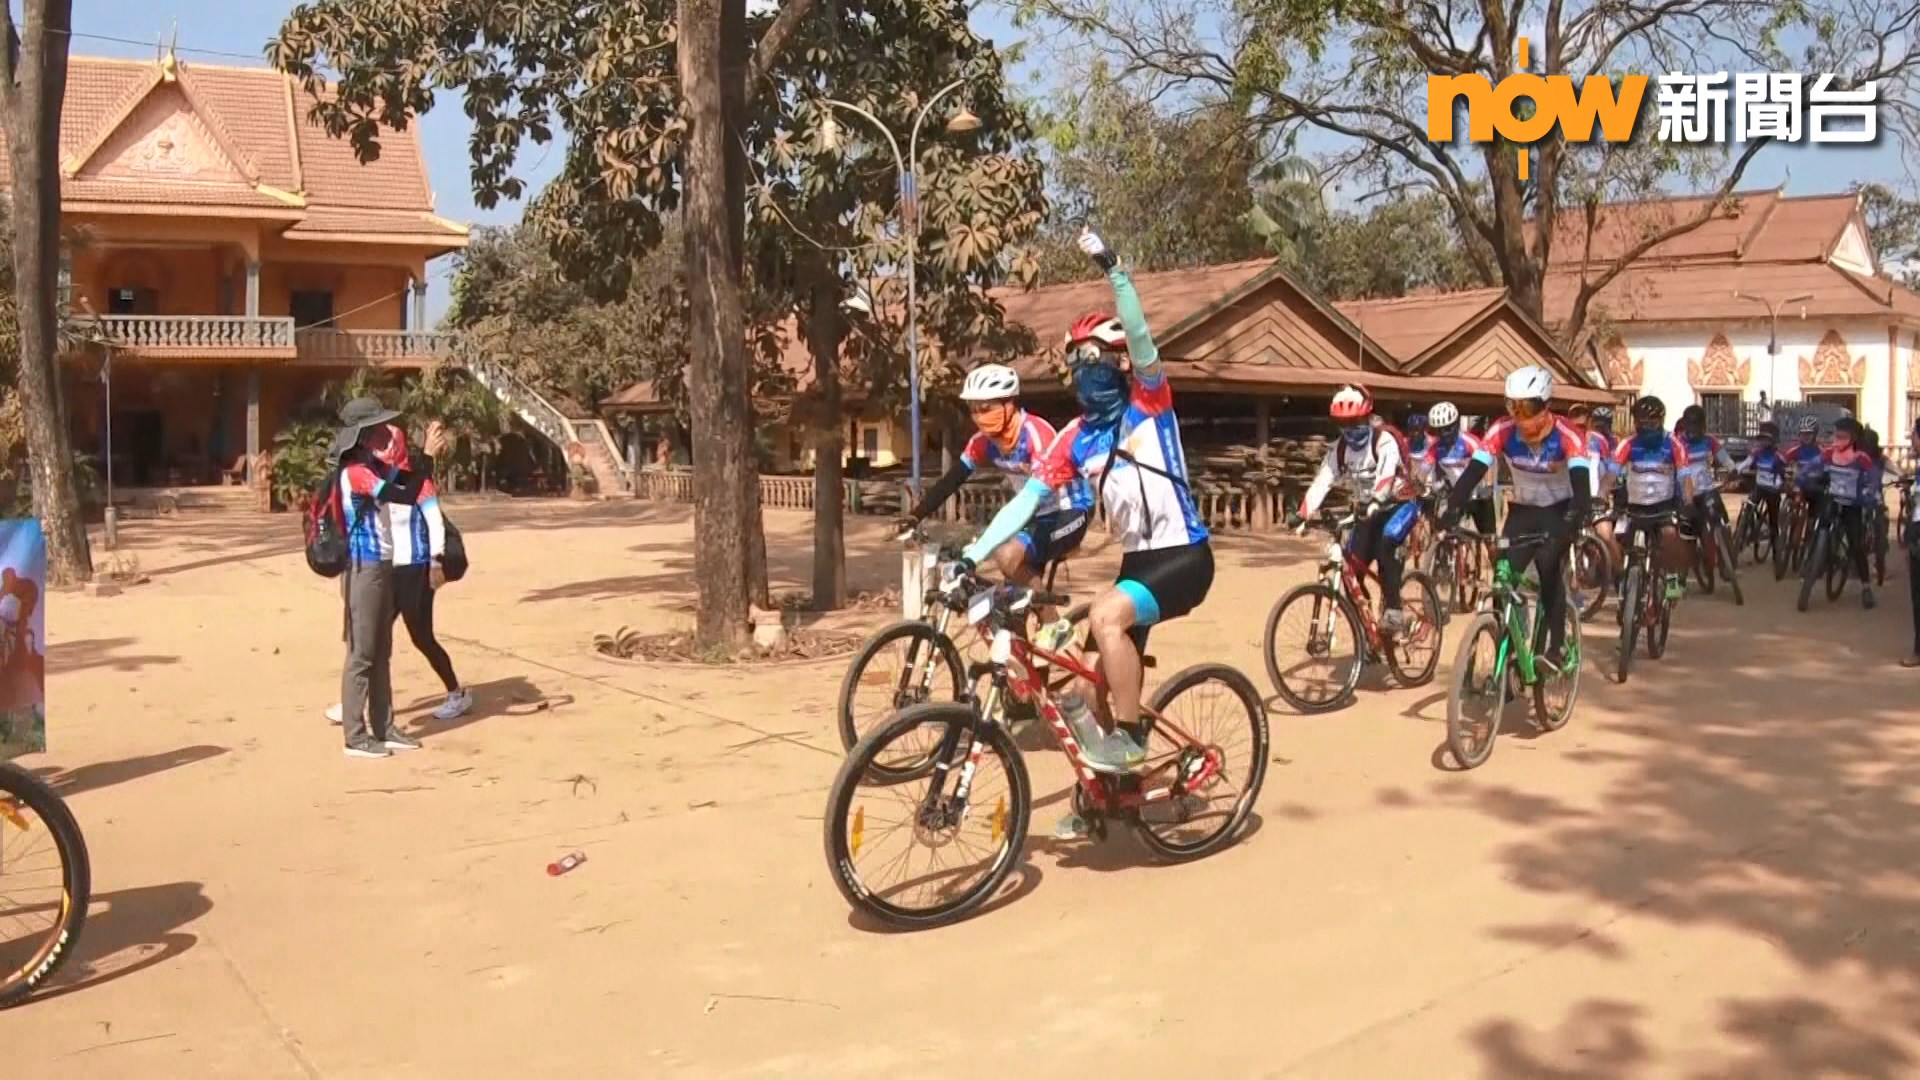 耐力單車籌款助柬埔寨兒童建中學